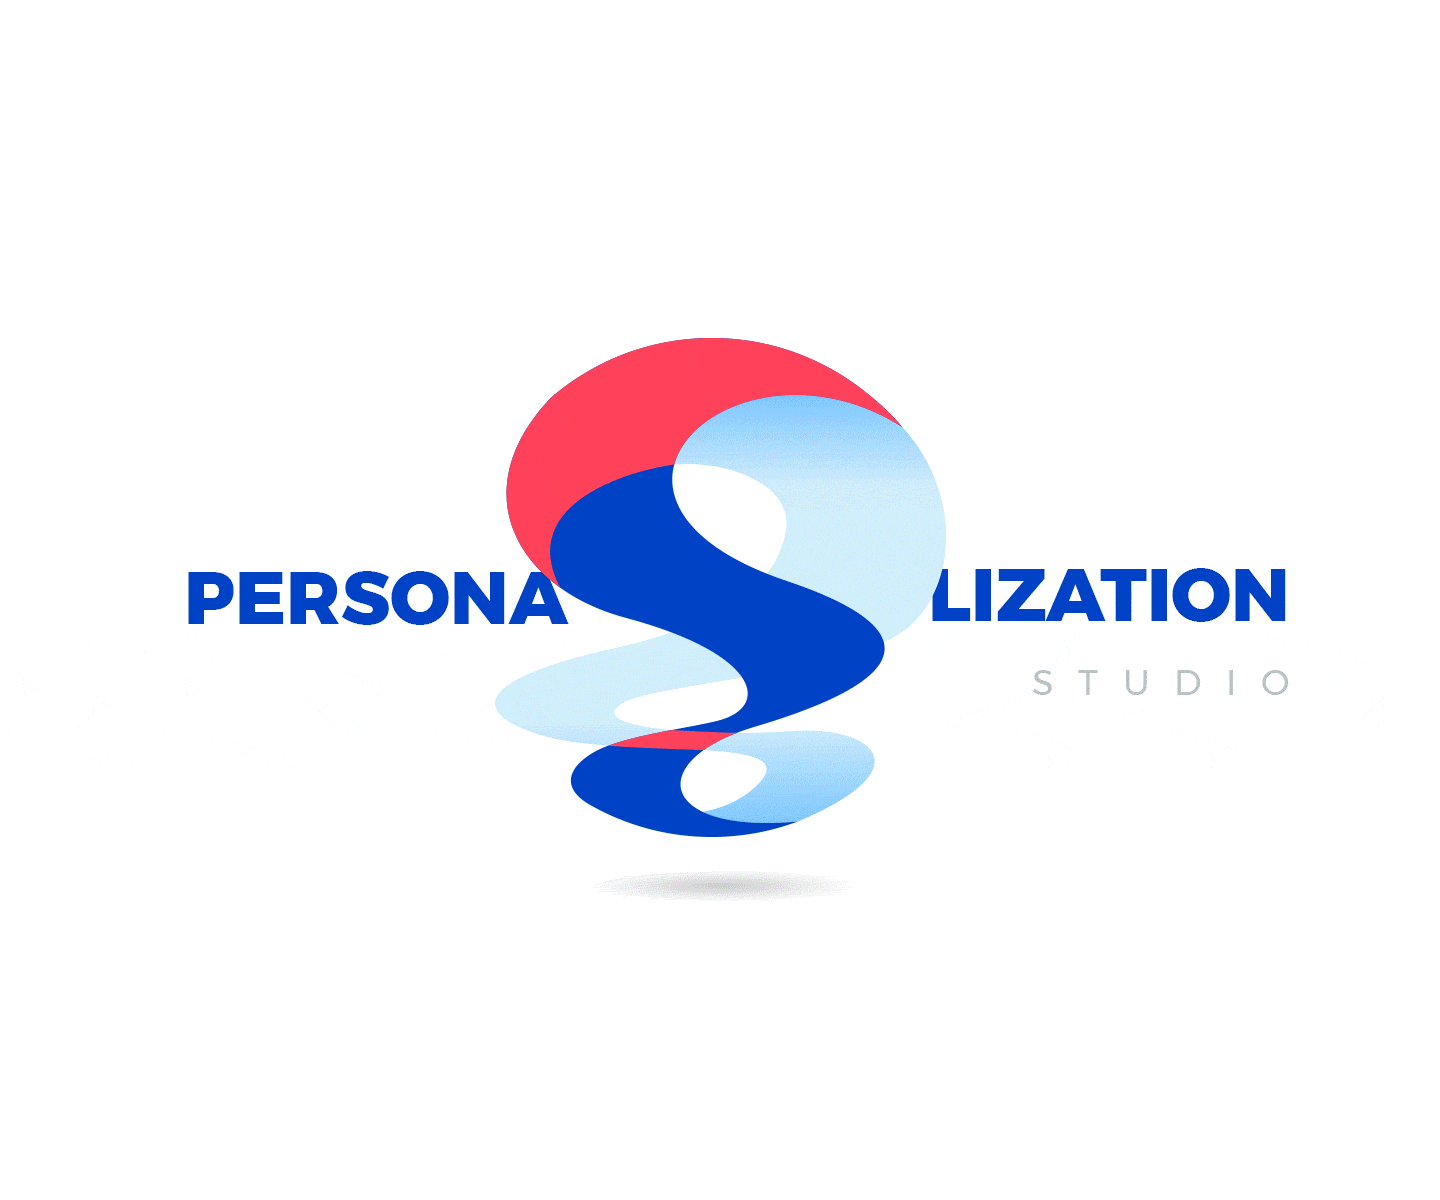 2-personalization